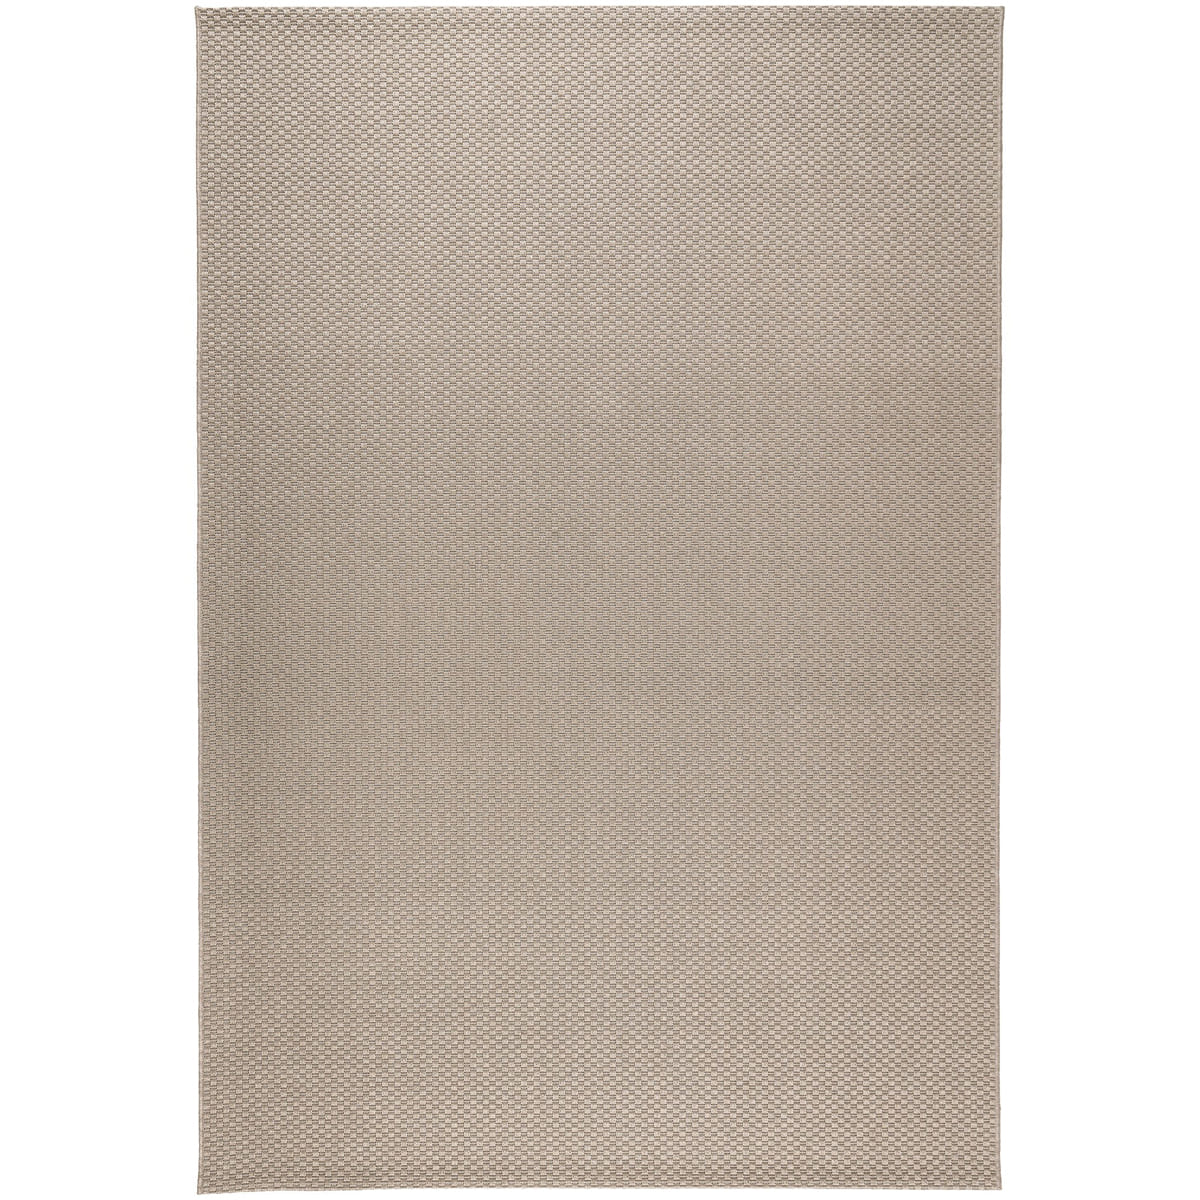 Ковер Ikea Morum 160х230 см, светло-коричневый ковер laredoute ковер безворсовый для дома и улицы helga 160 x 230 см бежевый